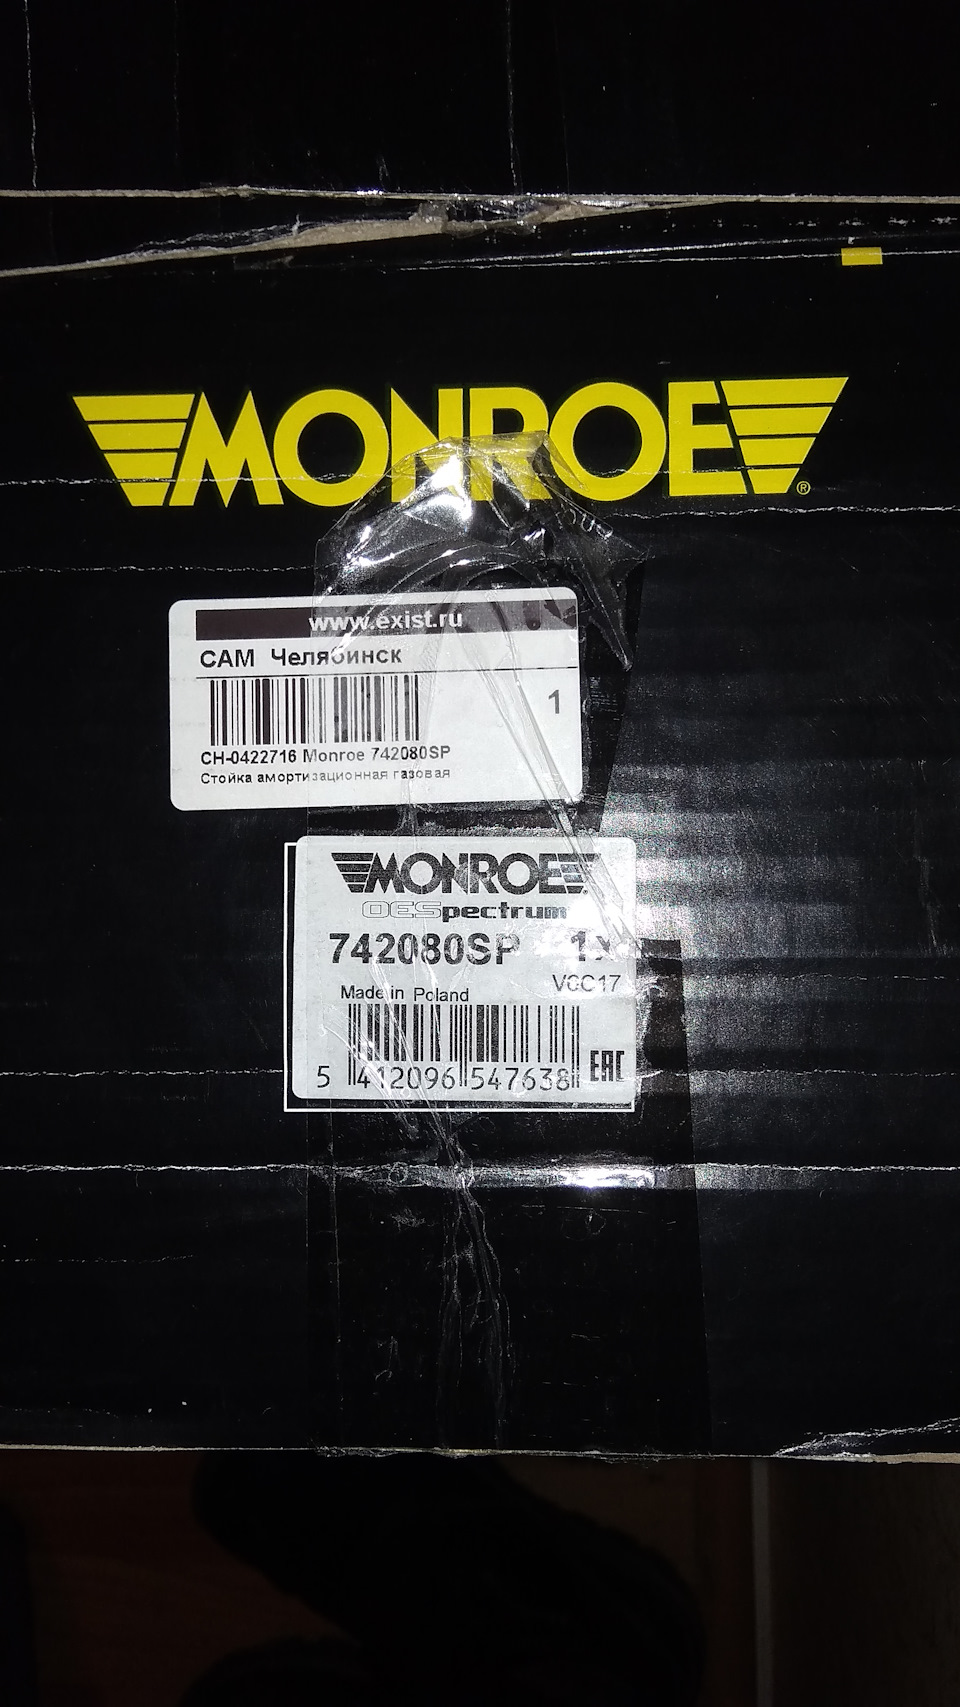 Стойки монро отзывы. Monroe 23892. 742080sp. Как отличить подделку стойки Монро.